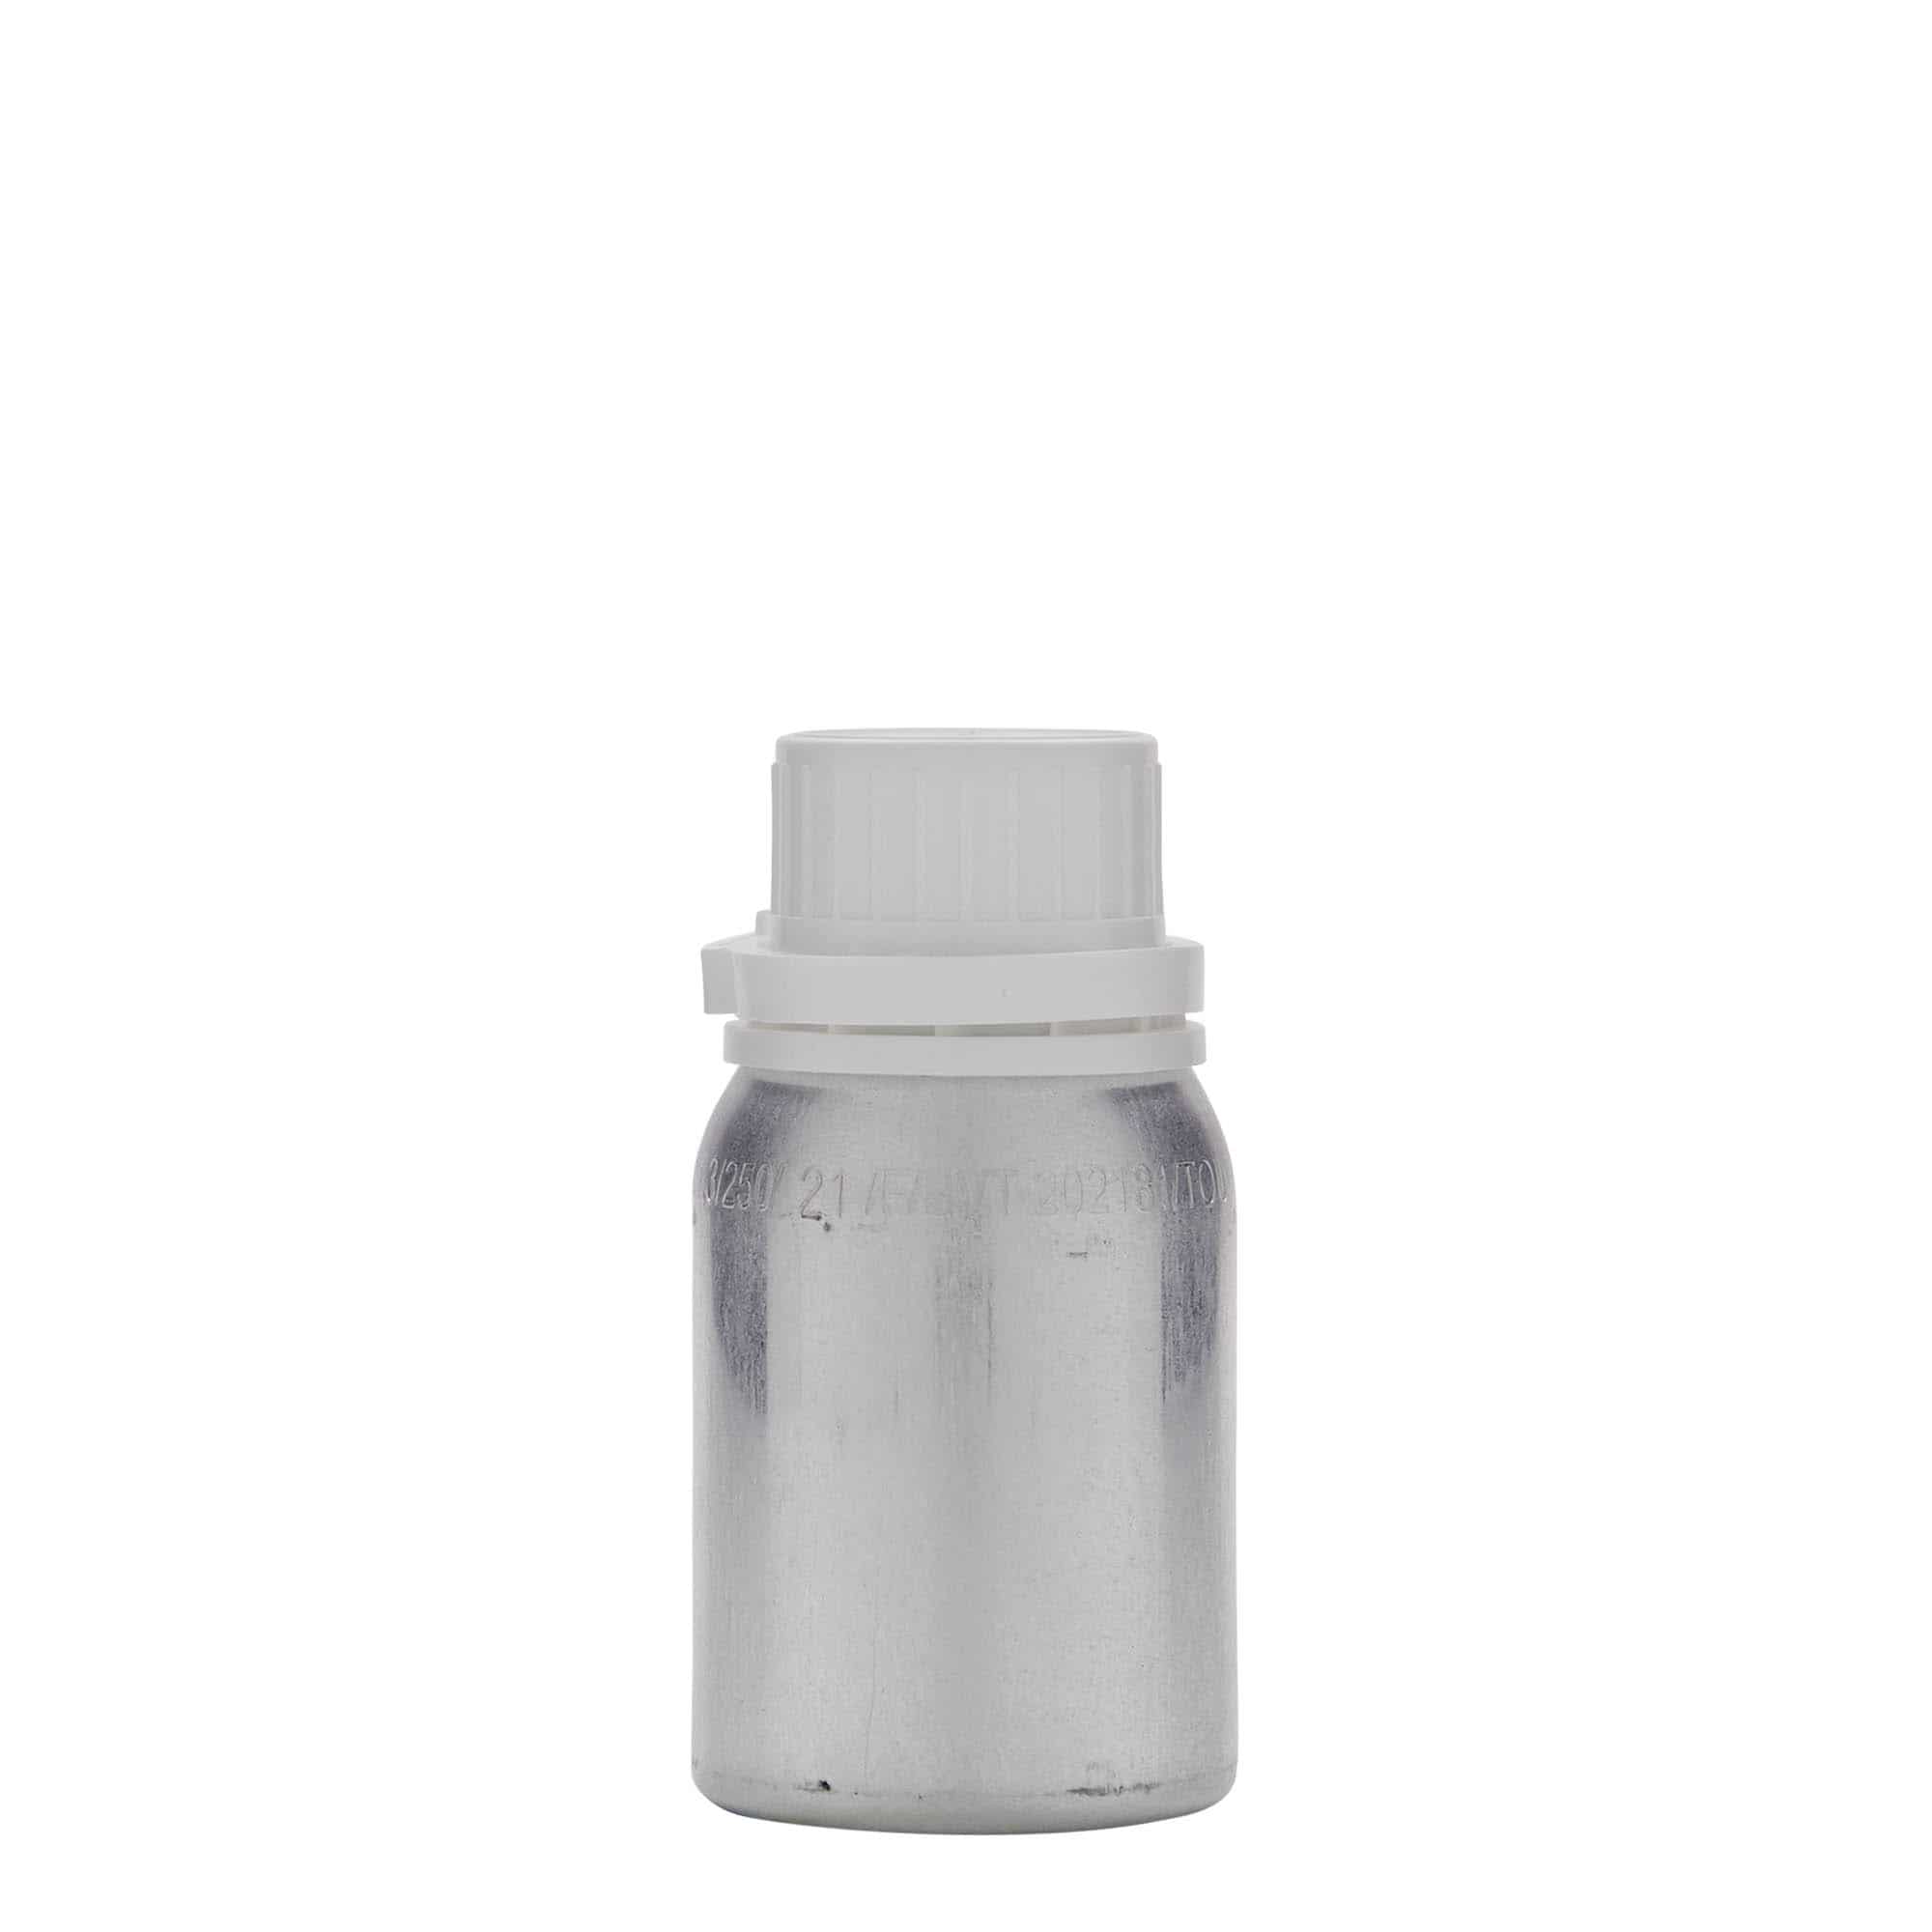 Hliníková lahev 125 ml, kov, stříbrná, ústí: DIN 32